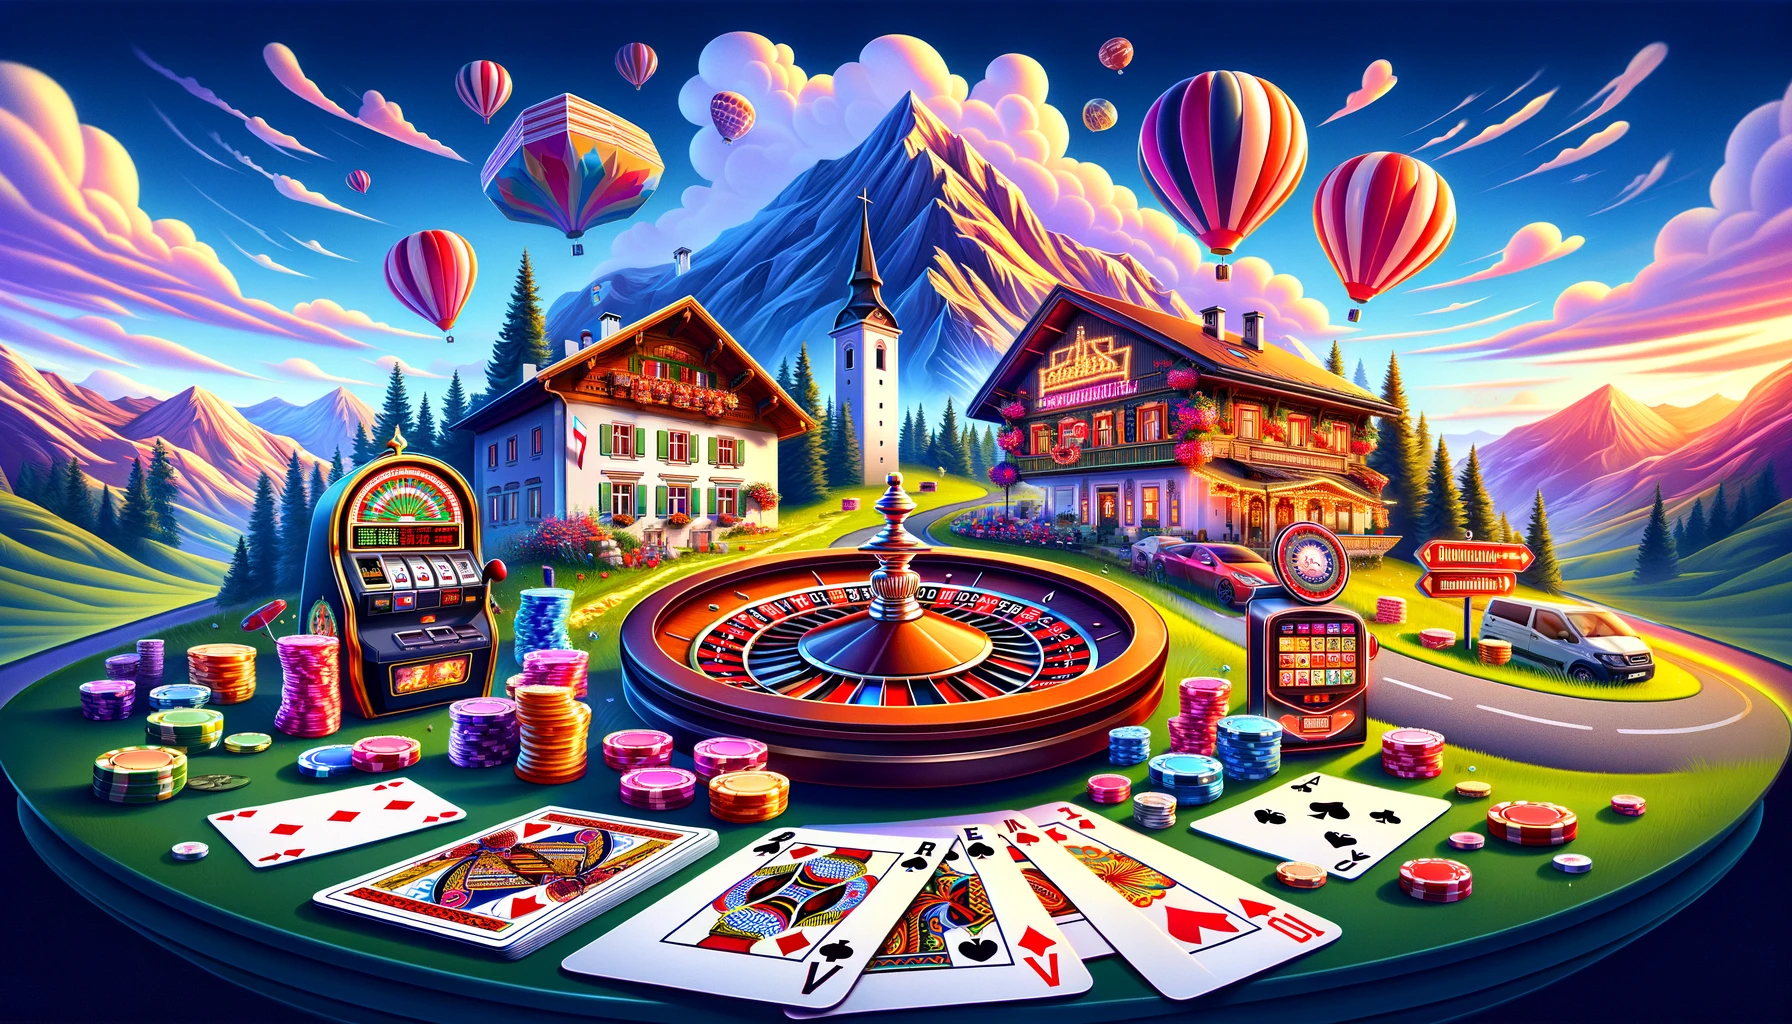 Beliebteste Online-Casino-Spiele in Österreich